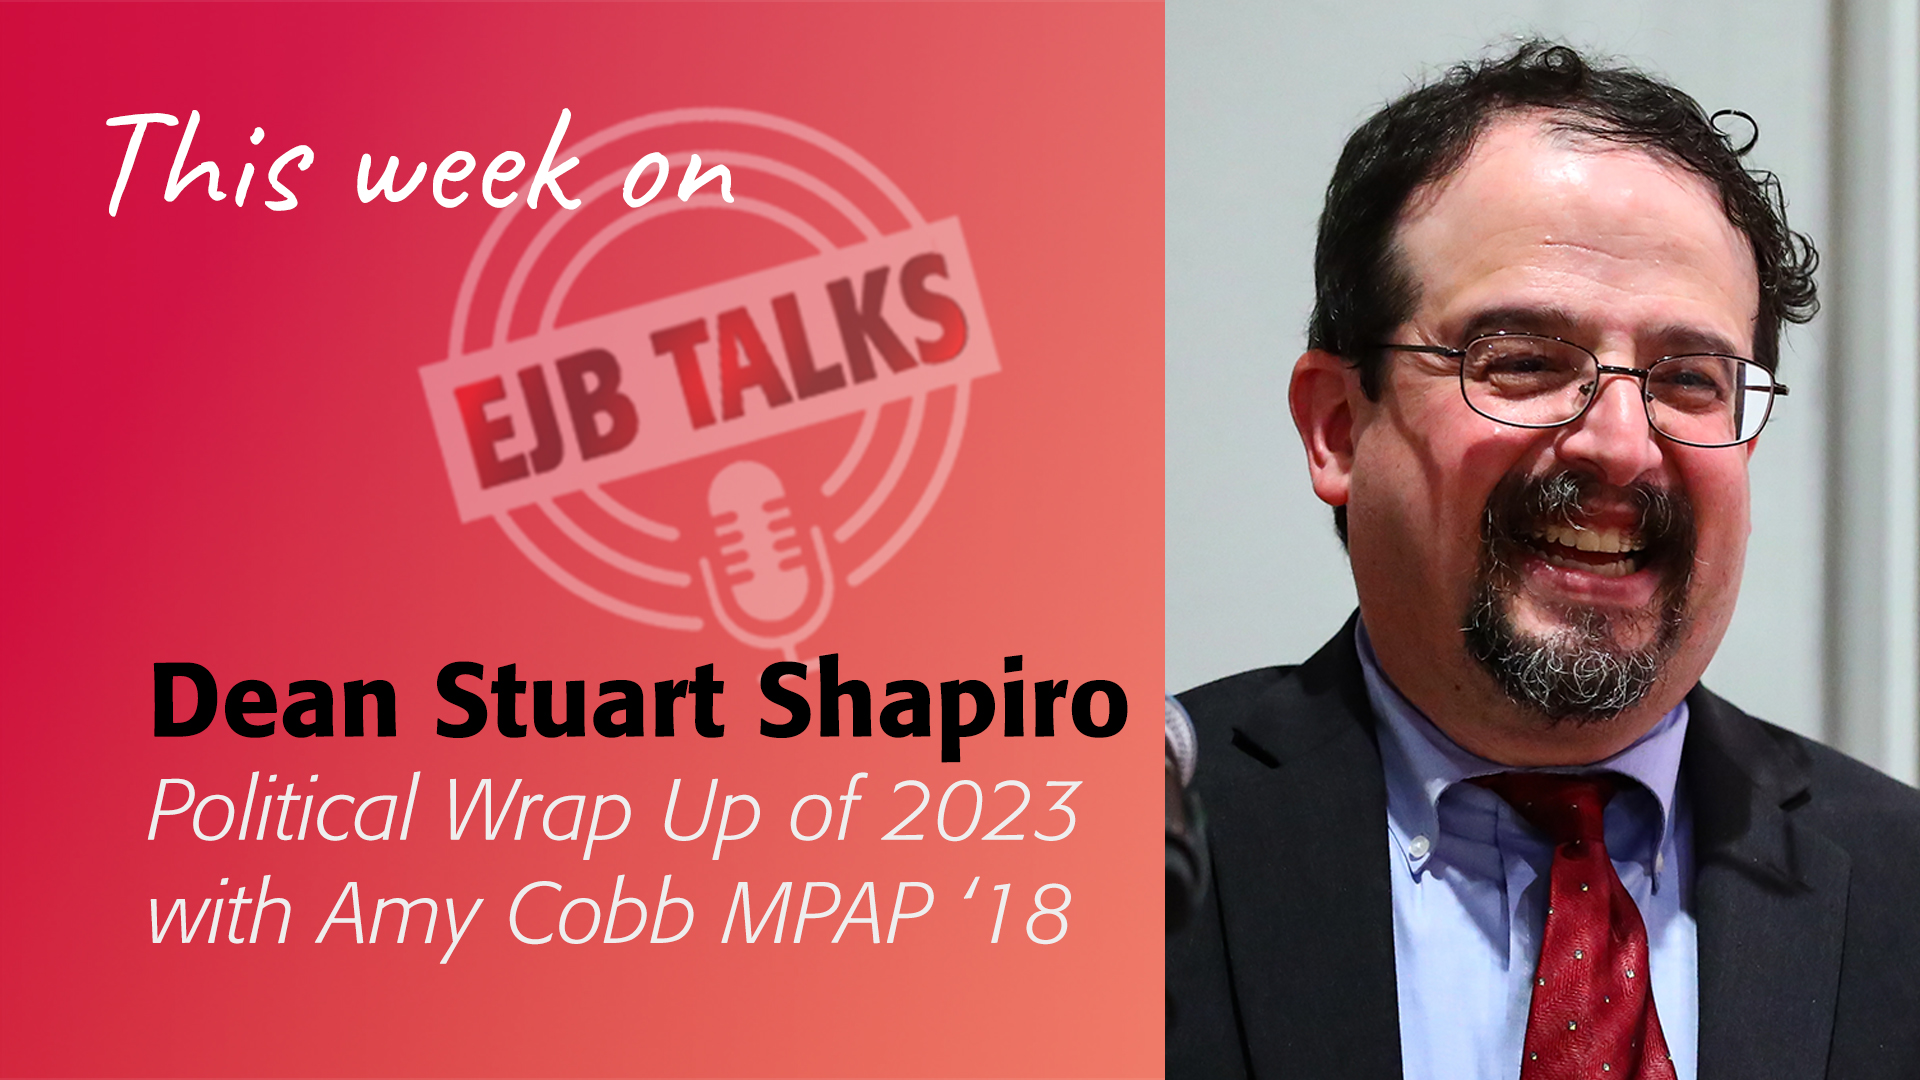 EJB Talks Stuart Shapiro